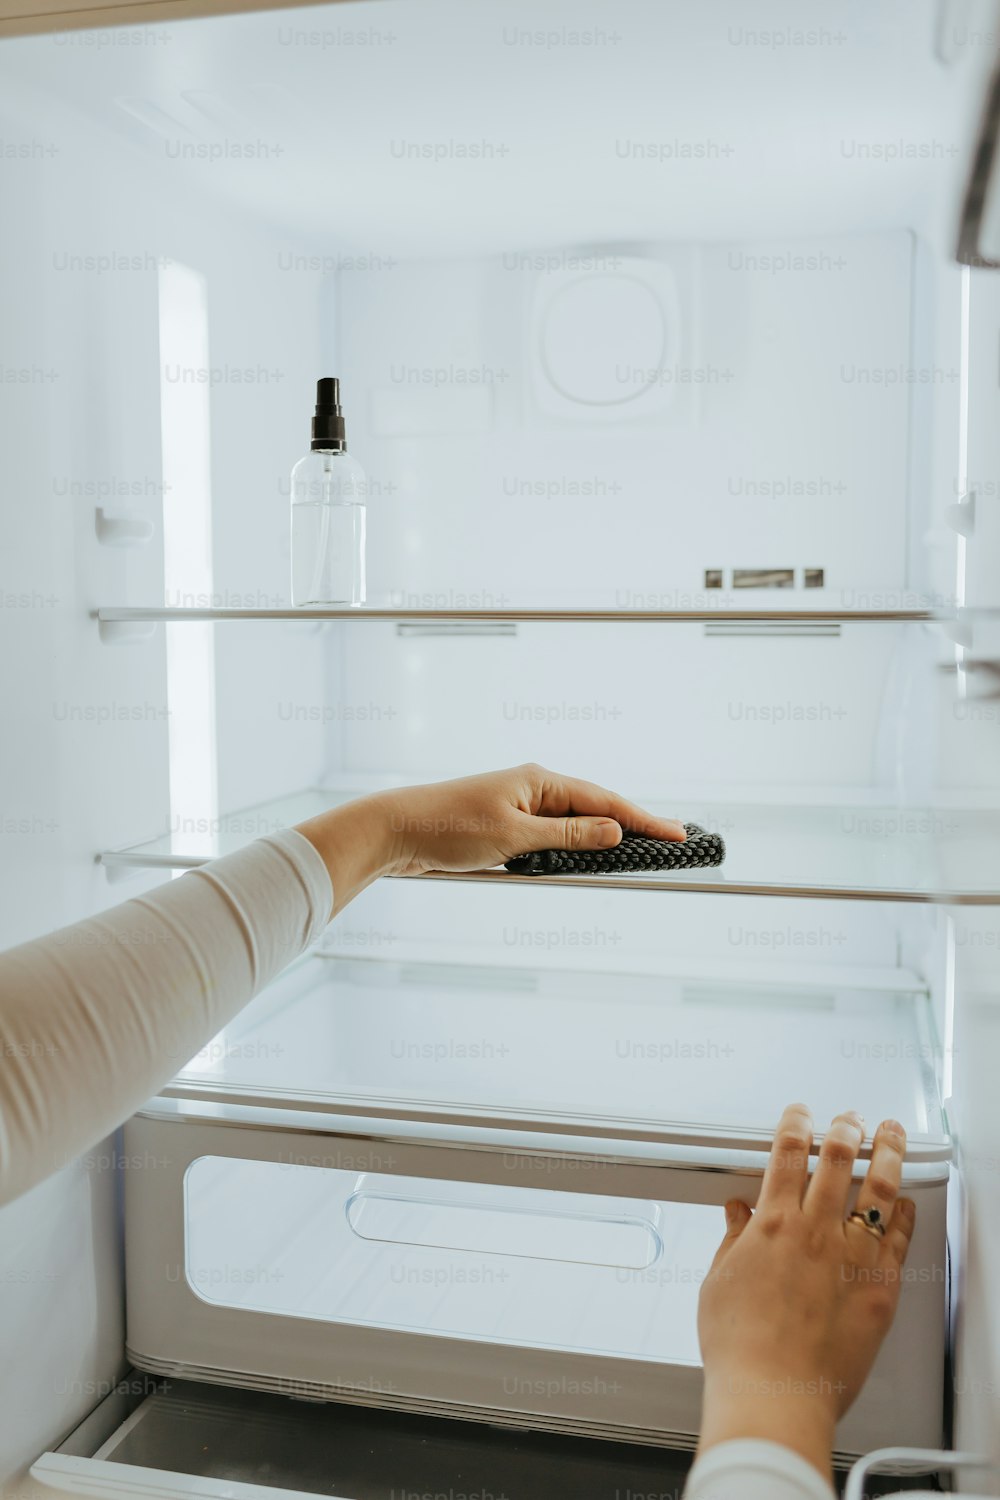 uma mulher segurando um controle remoto na frente de uma geladeira